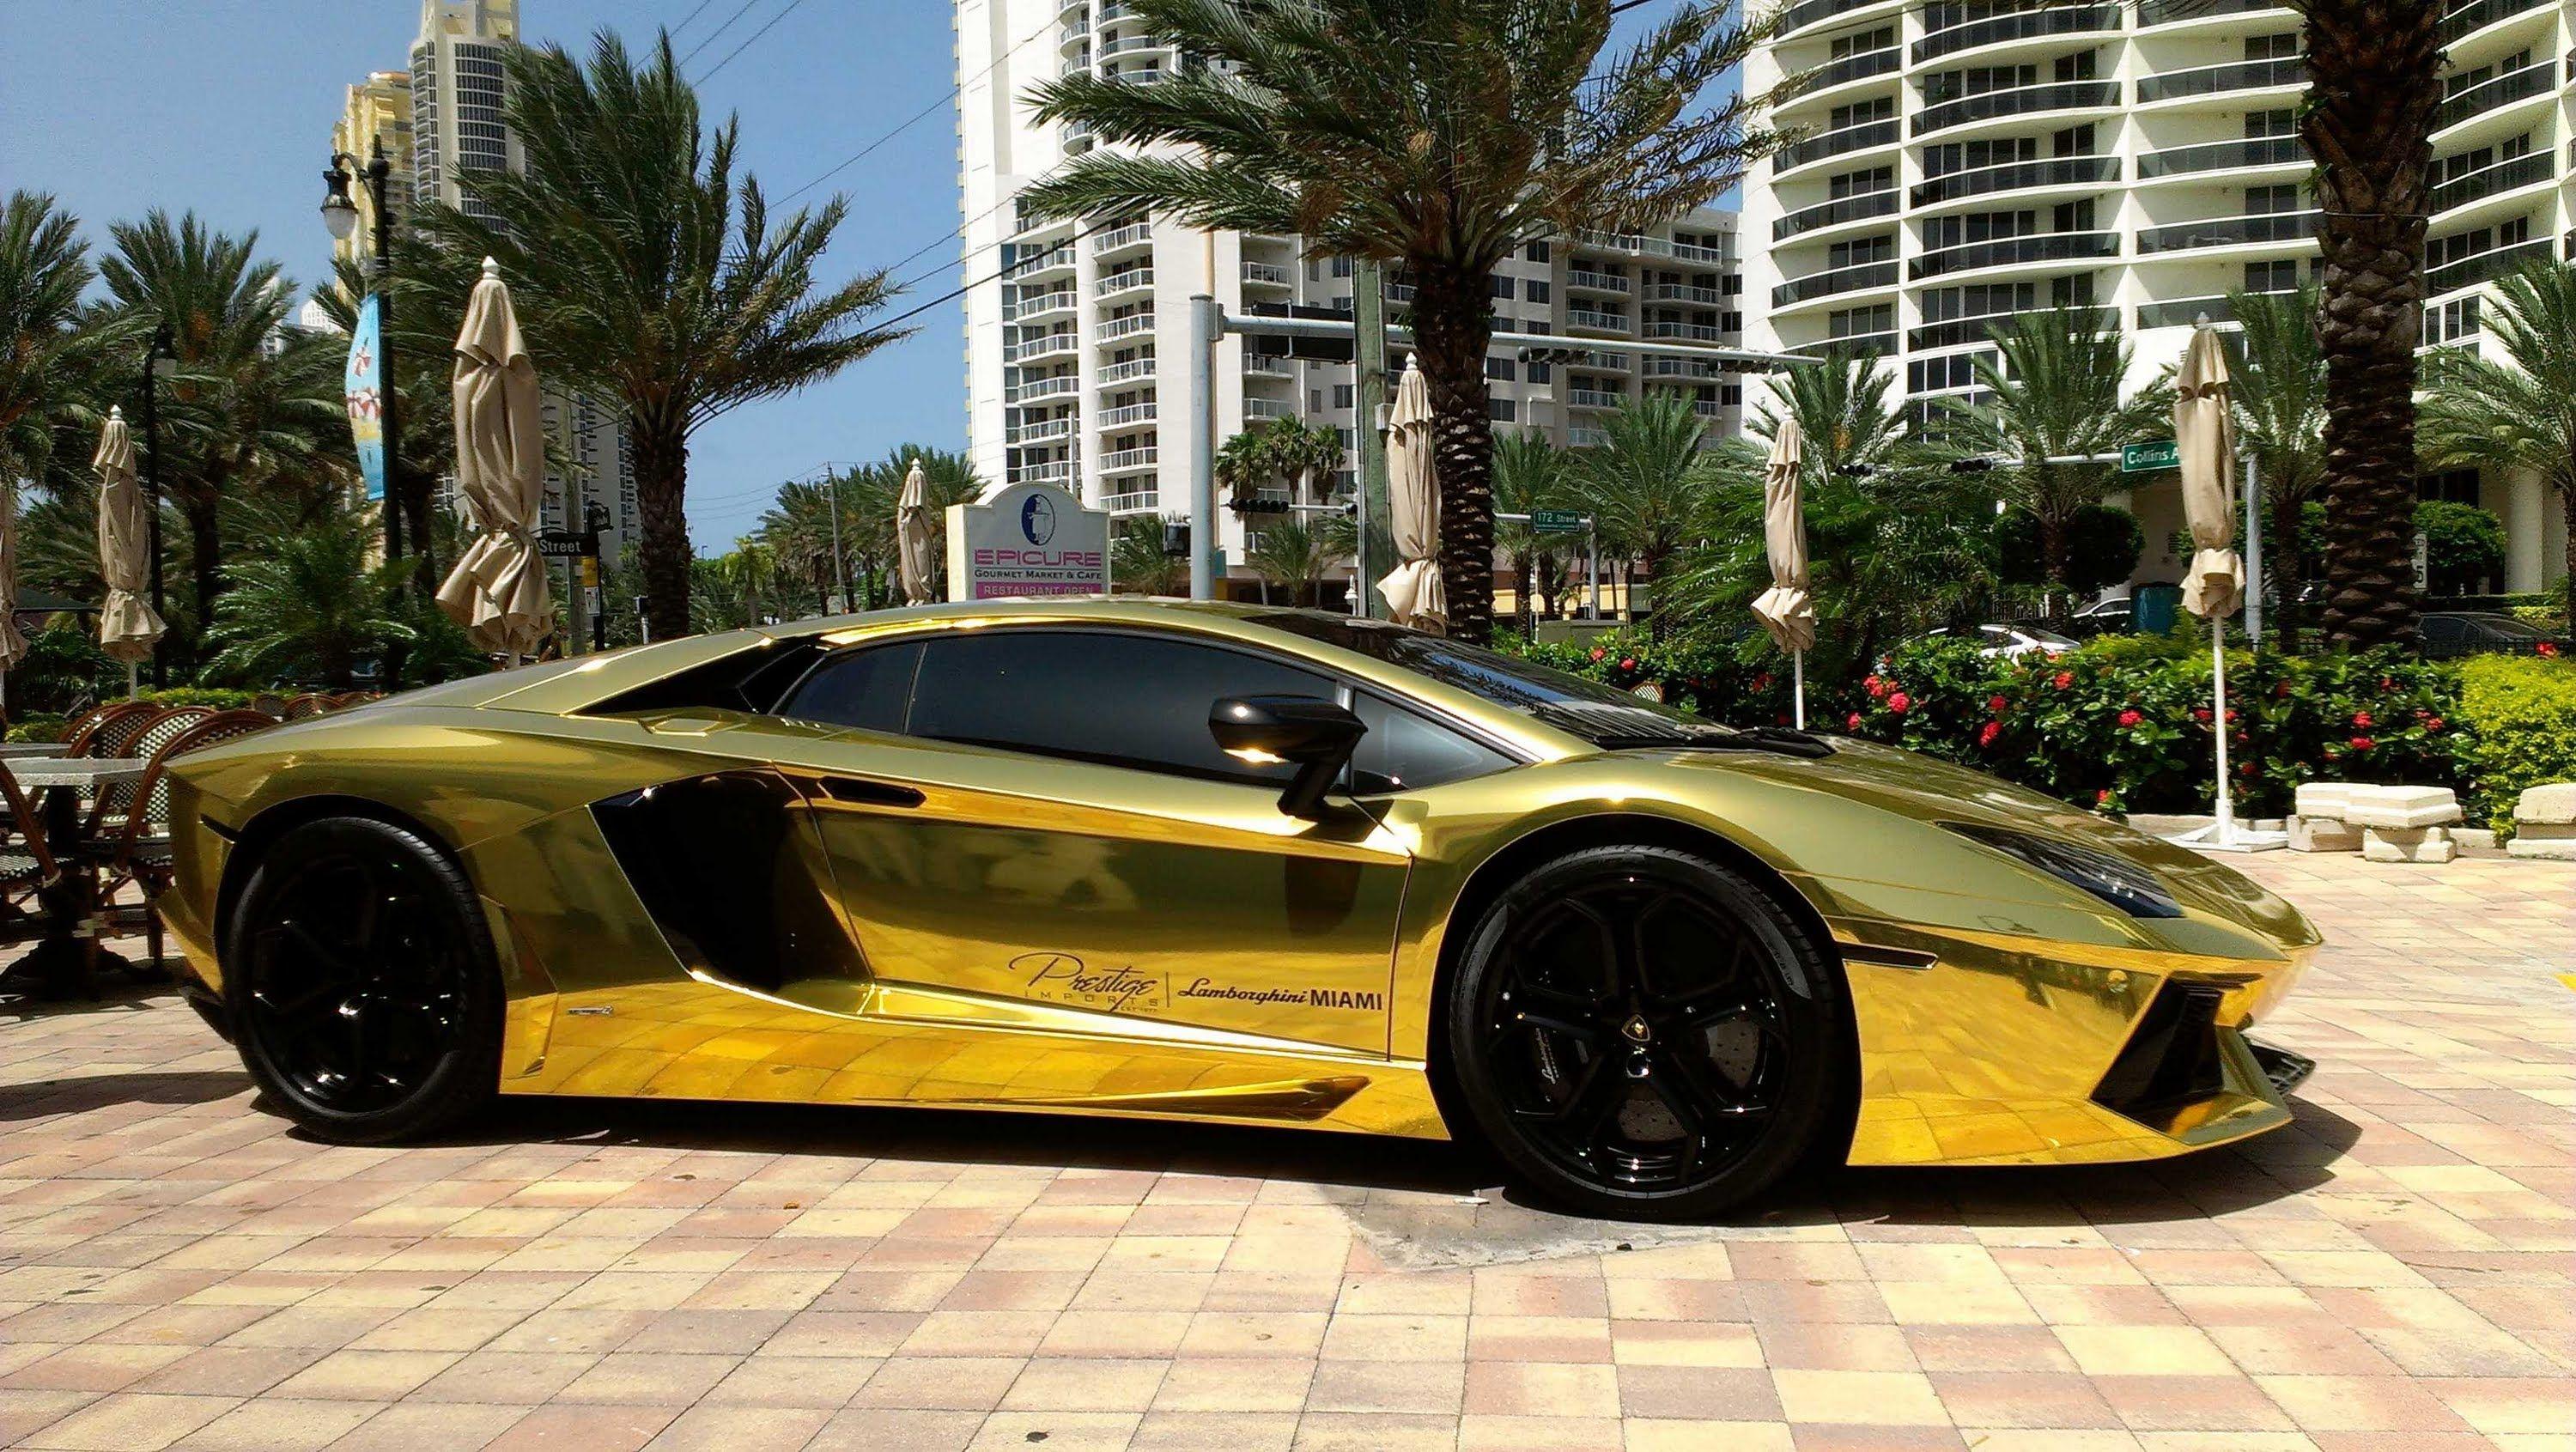 Lamborghini Gold